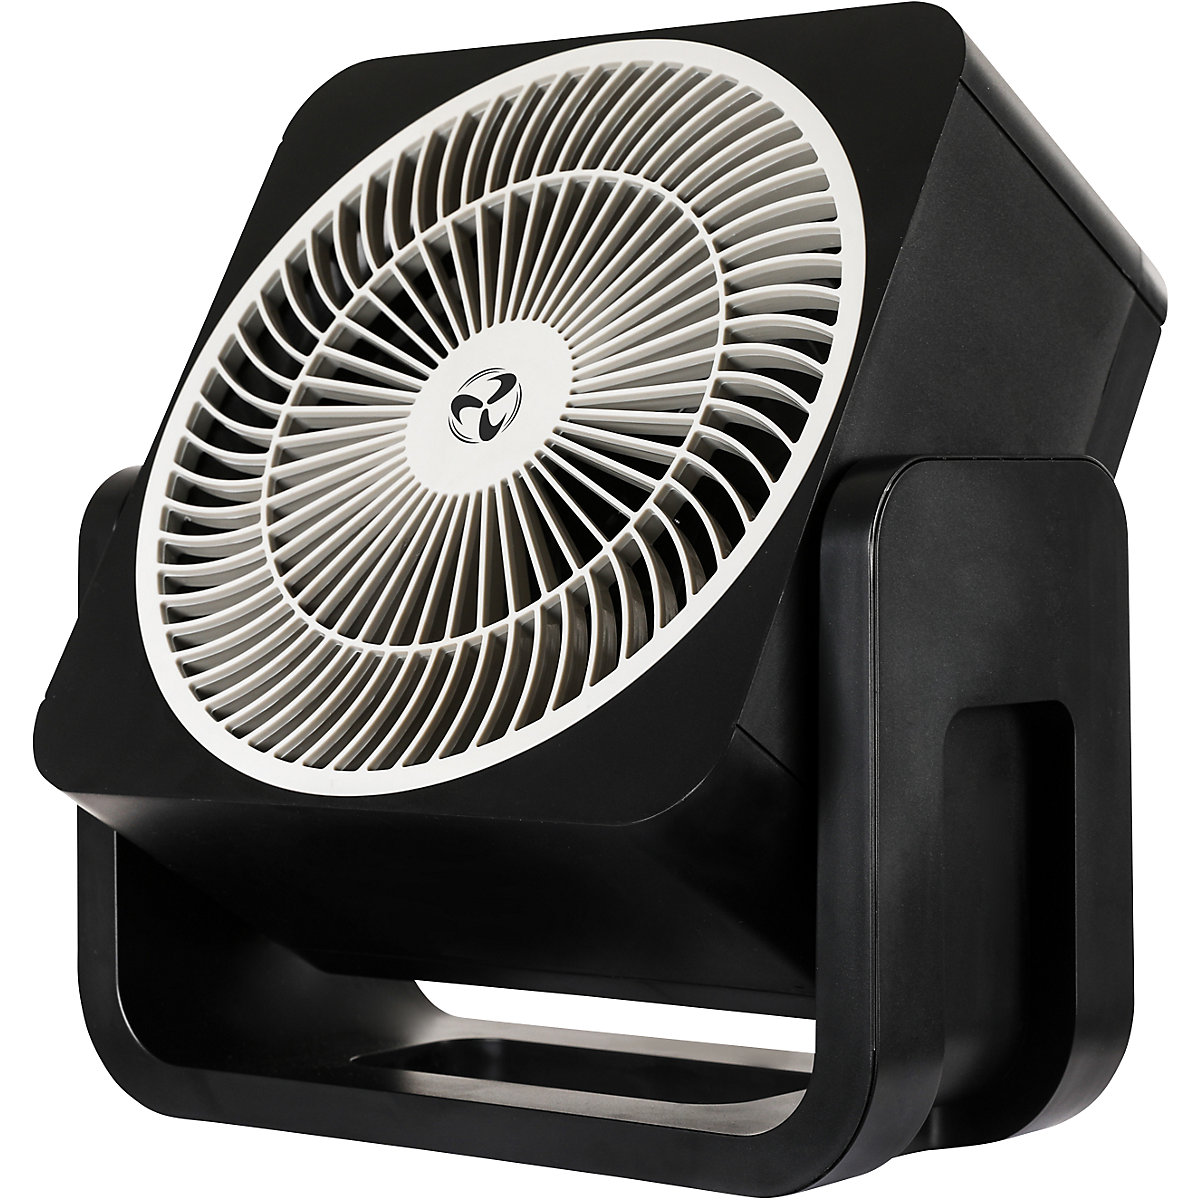 Stolni ventilator, VxŠxD 300 x 284 x 120 mm, u crnoj boji-5